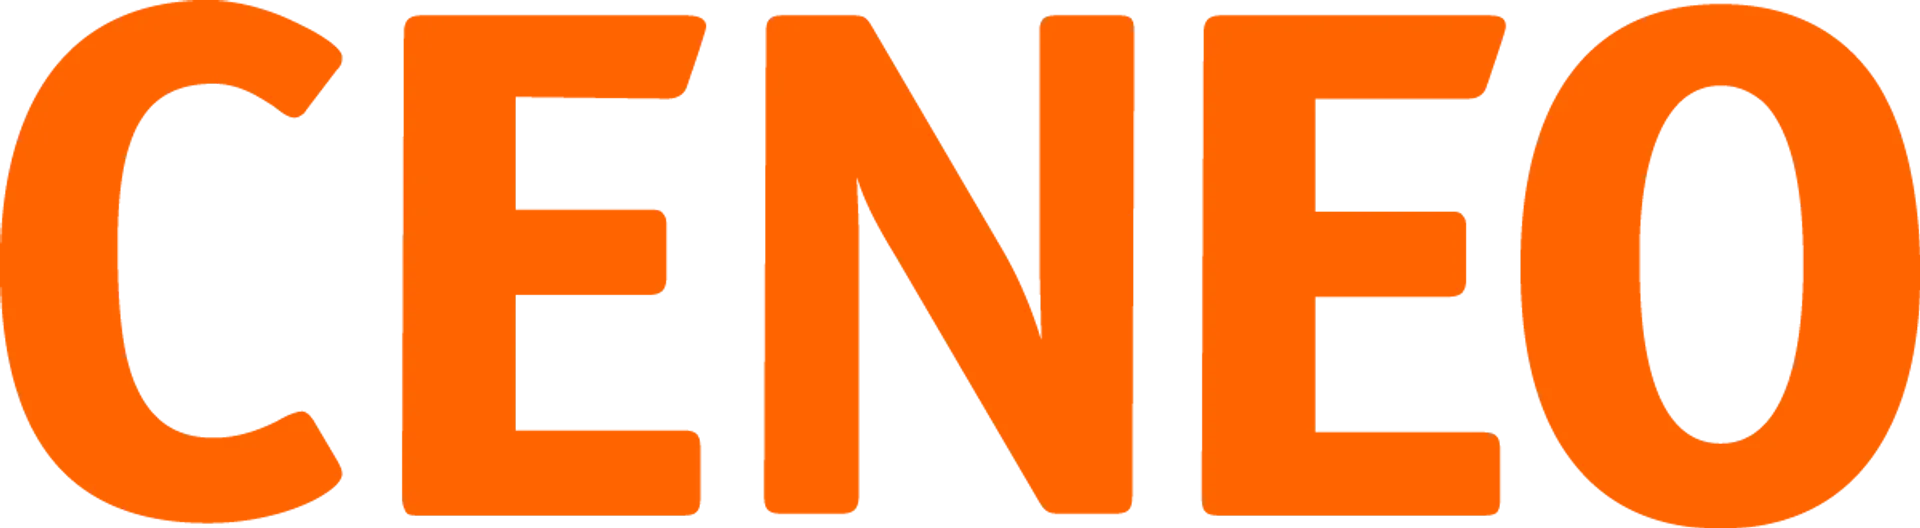 CENEO logo